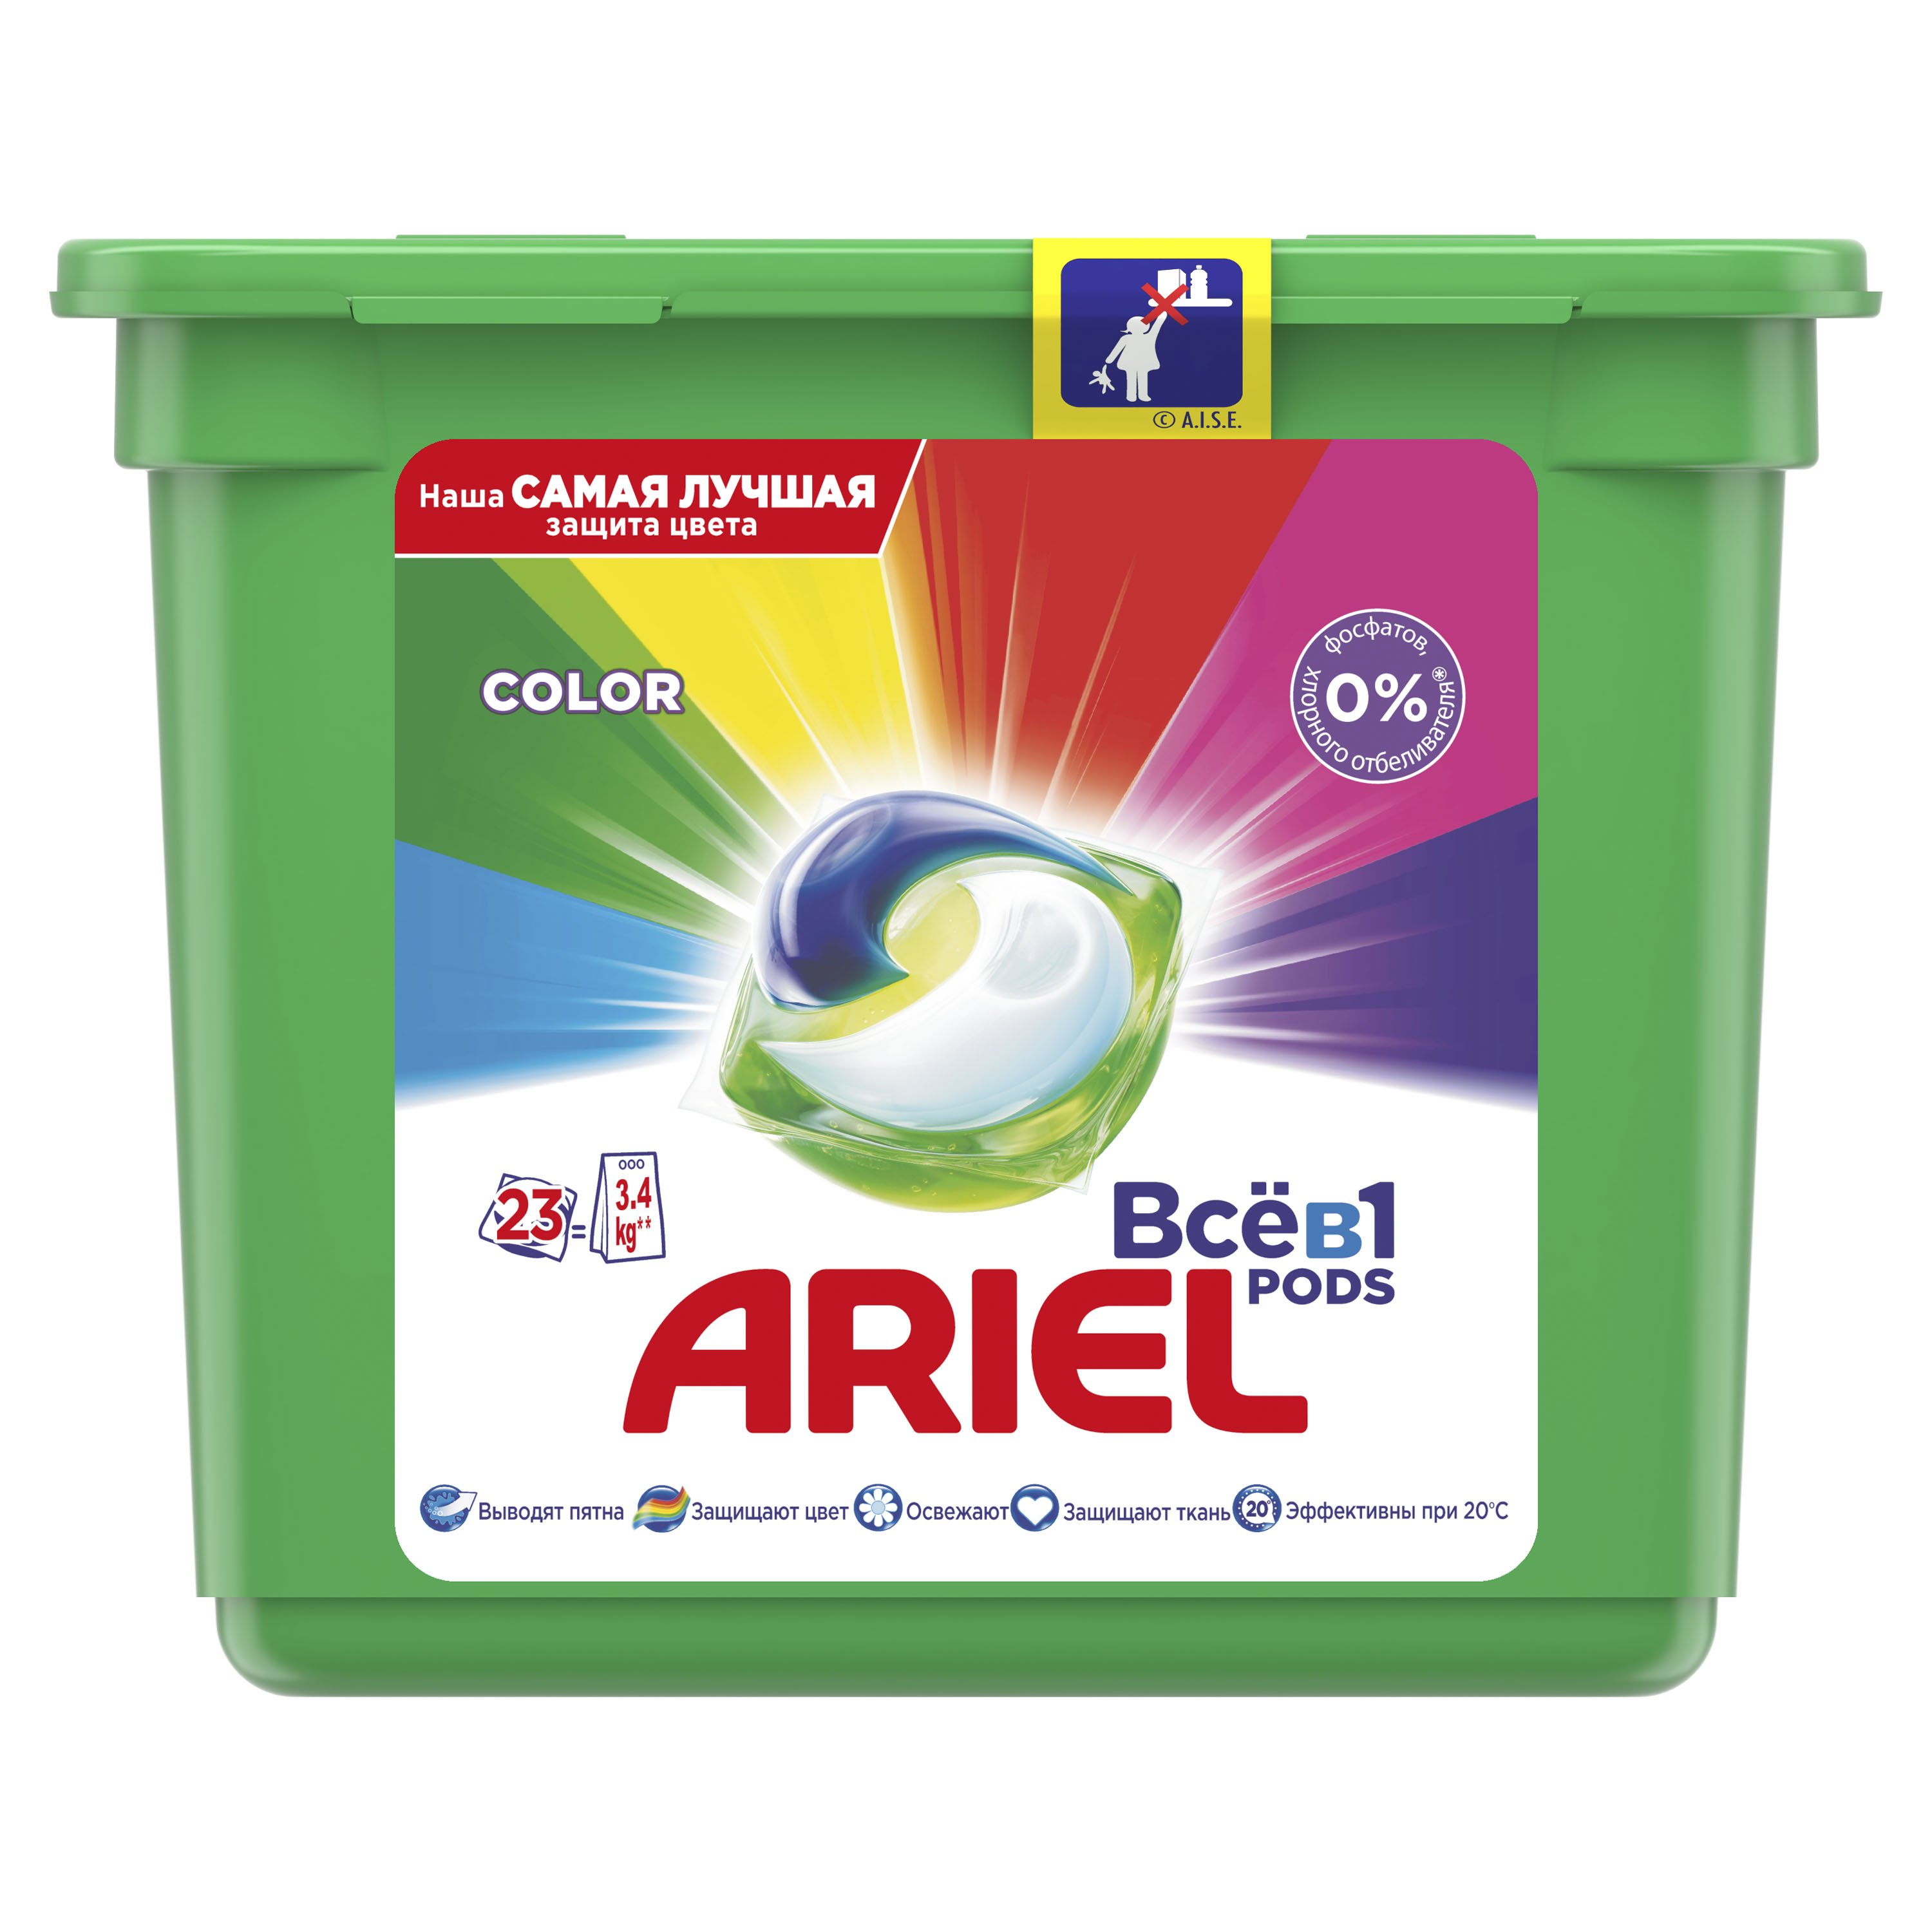 Капсули для прання Ariel Pods Все-в-1 Color, для кольорових тканин, 23 шт. - фото 1